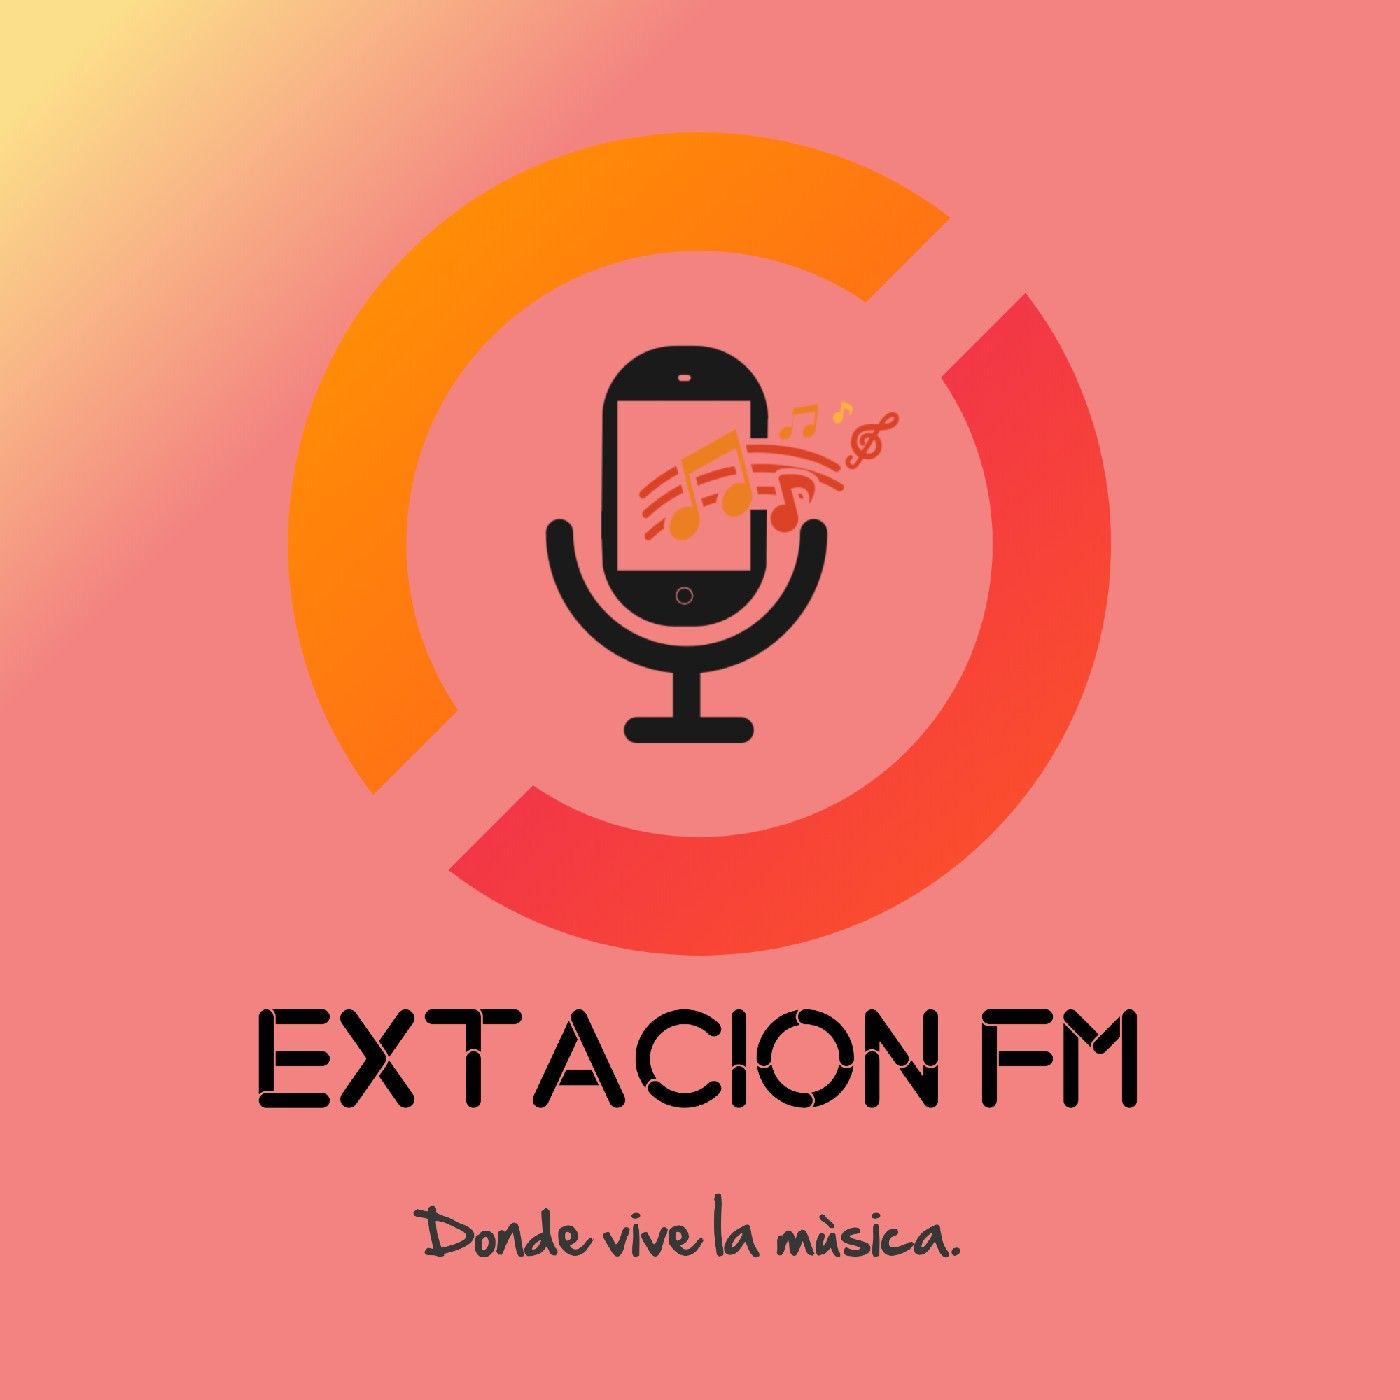 XTACION FM